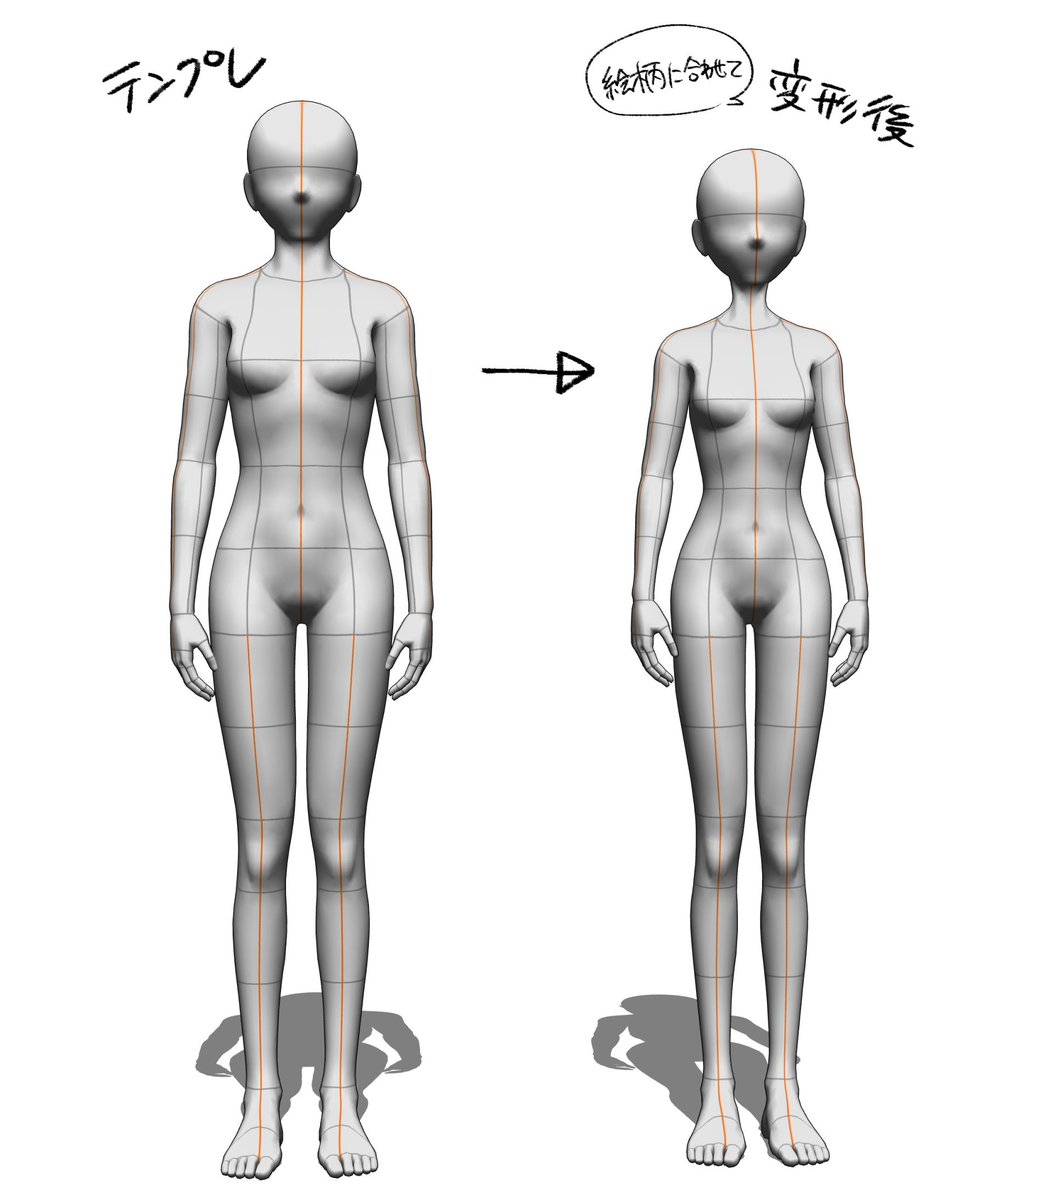 クリスタの3Dモデルを、自分の絵柄の体型に変えられるのをどうして誰も教えてくれなかったんですか!!!!!
#clipstudio
#CLIPSTUDIOPAINT 